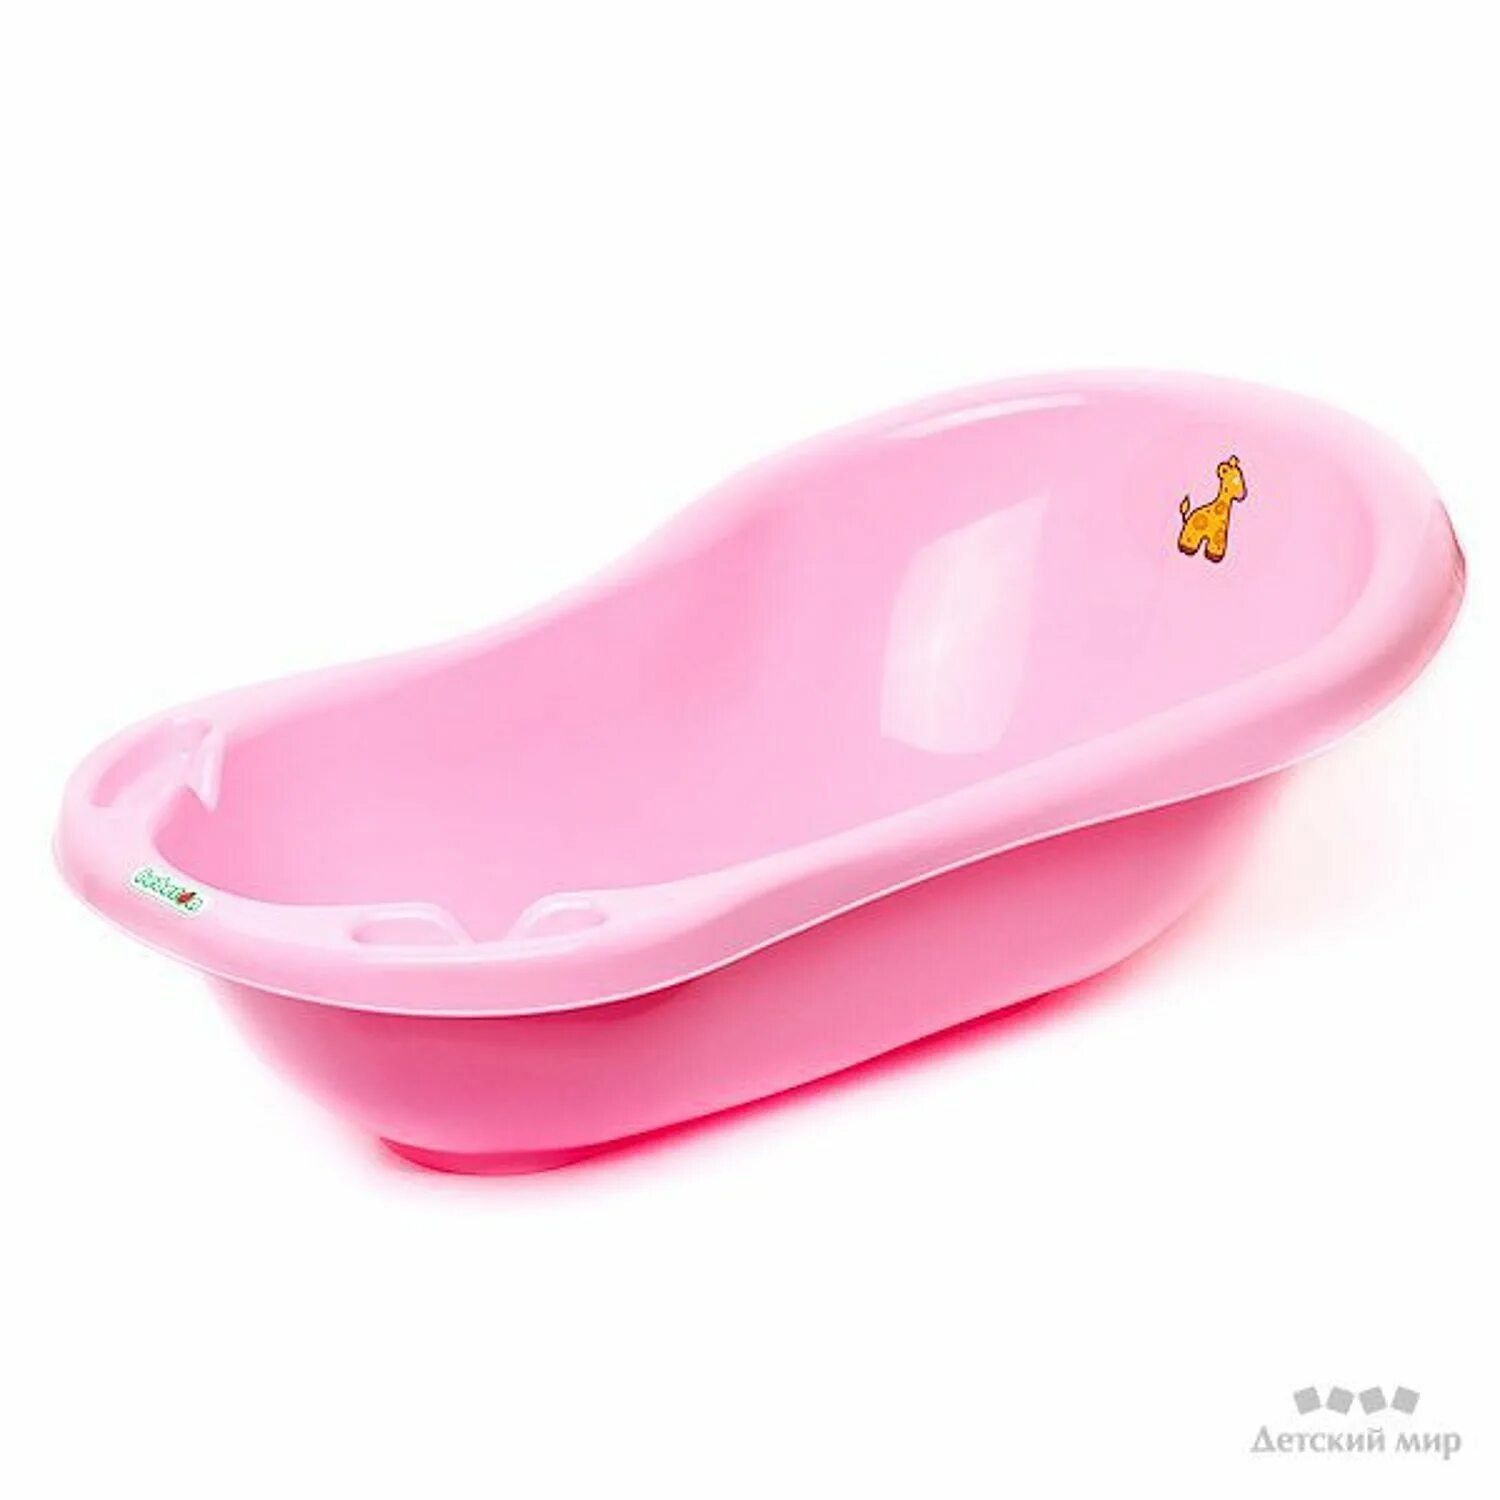 Авито купить ванночку. Ванночка бебетон. Детская ванна Babyton 100. Ванночка Babyton 46л. М3222 ванна детская "Карапуз"(розовый).